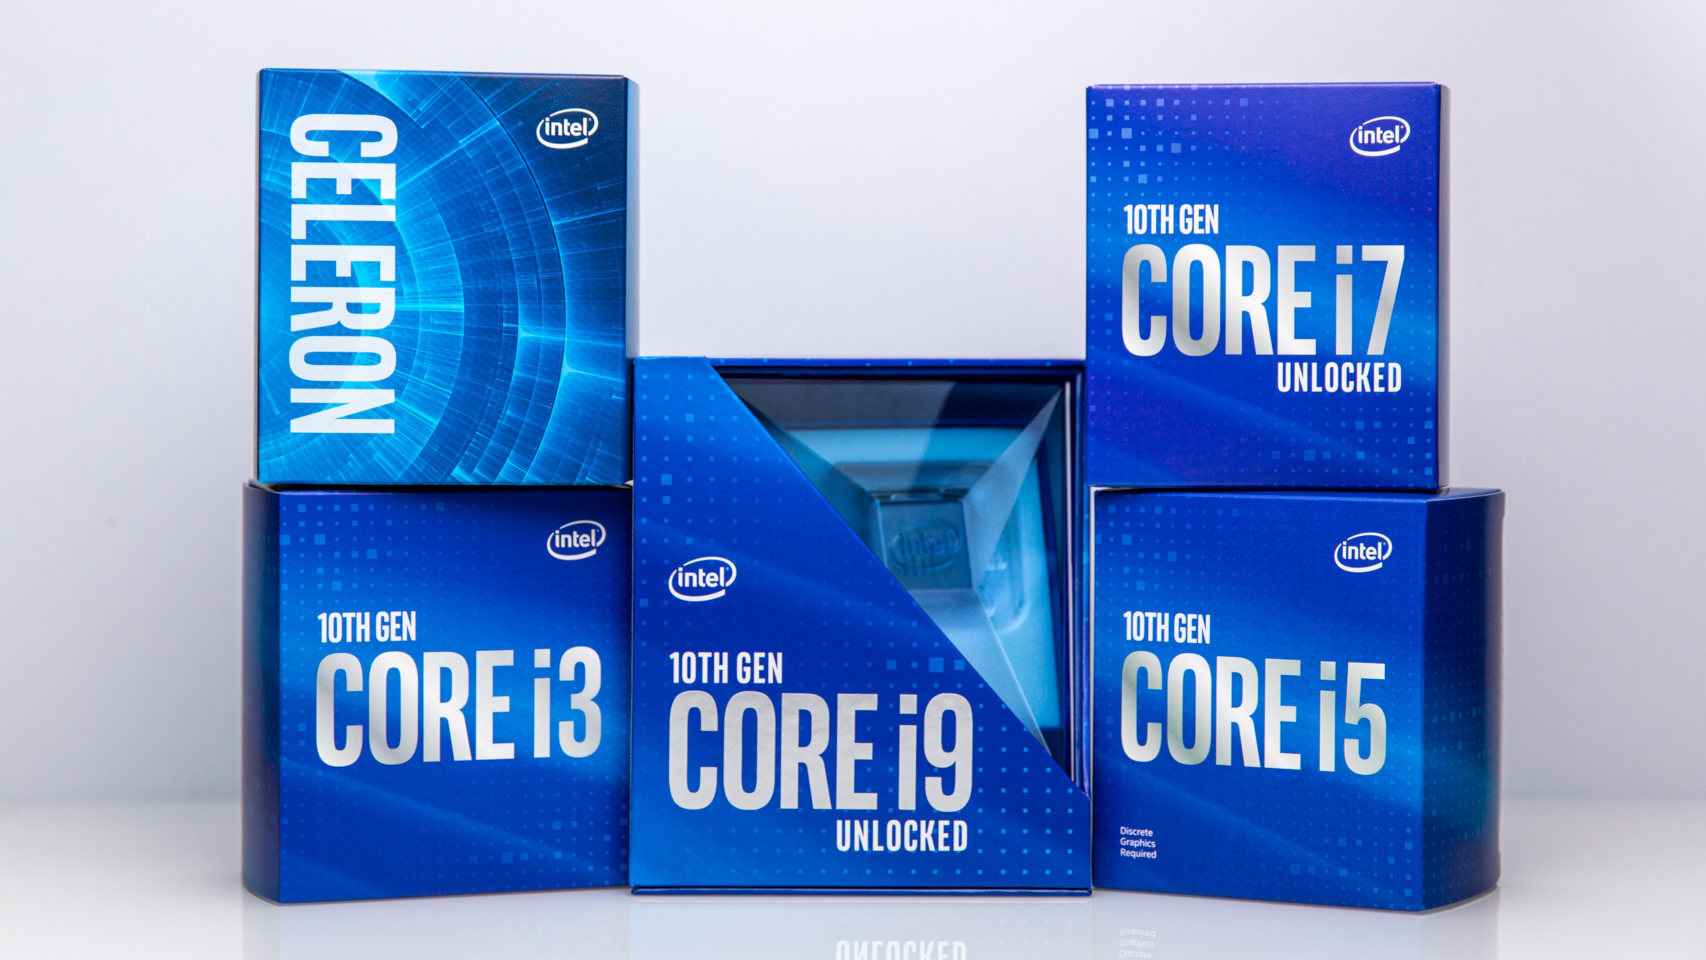 Toda la gama de procesadores Intel da el paso a la décima generación